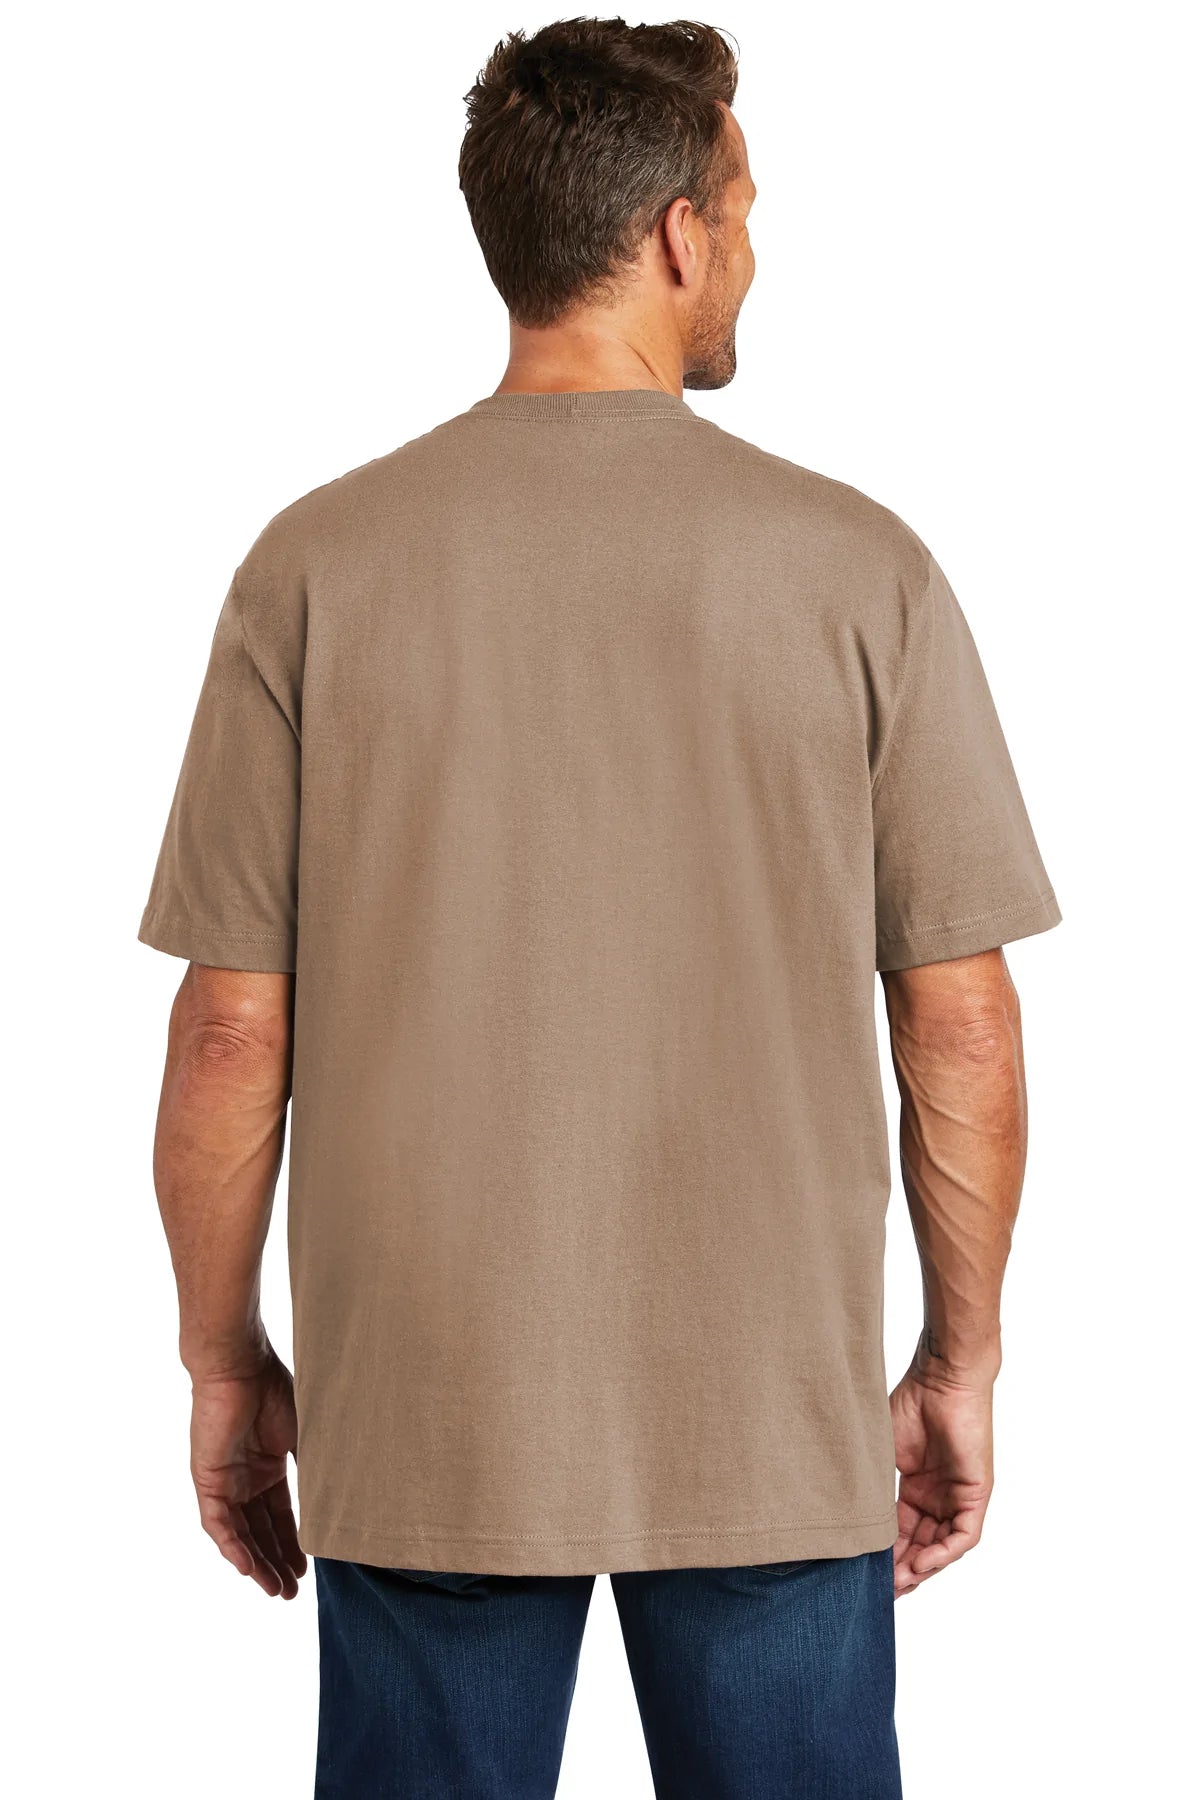 carhartt workwear pocket short sleeve t-shirt ctk87 desert